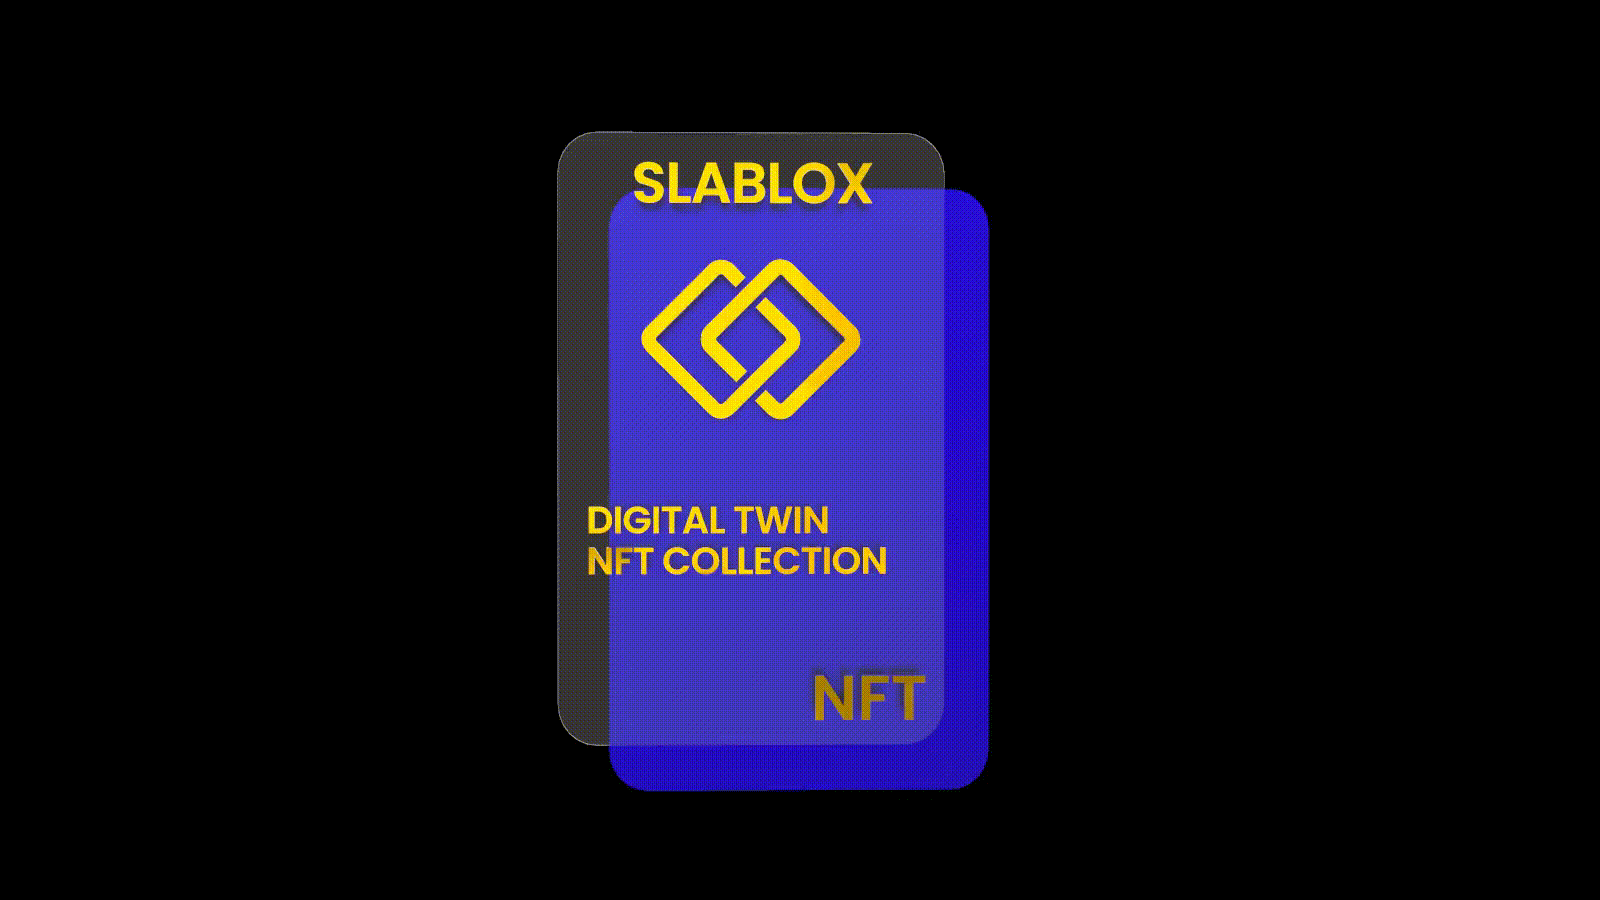 SLABLOX DIGITAL TWIN NFT'S